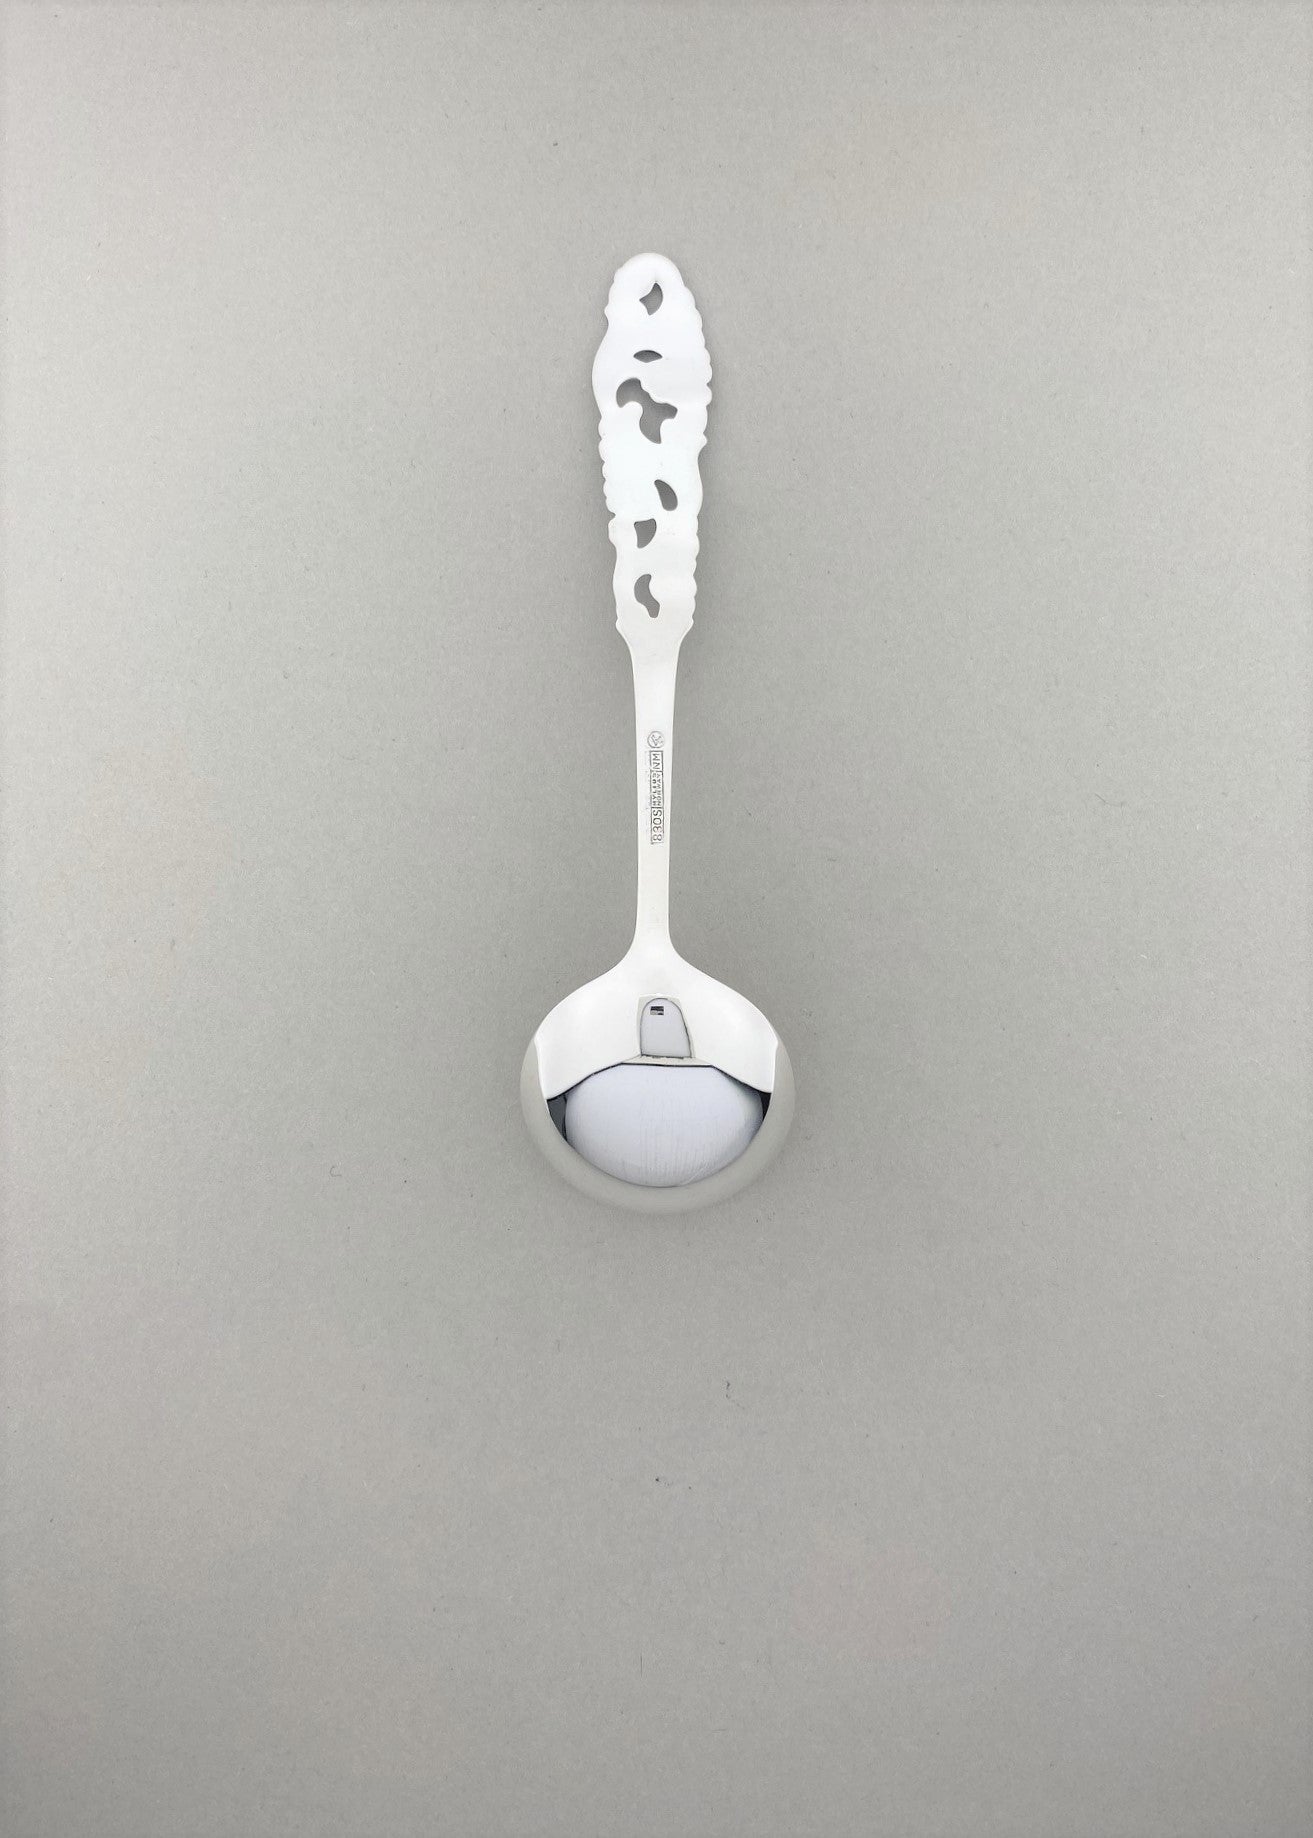 Vintage Telesilver sugar spoon